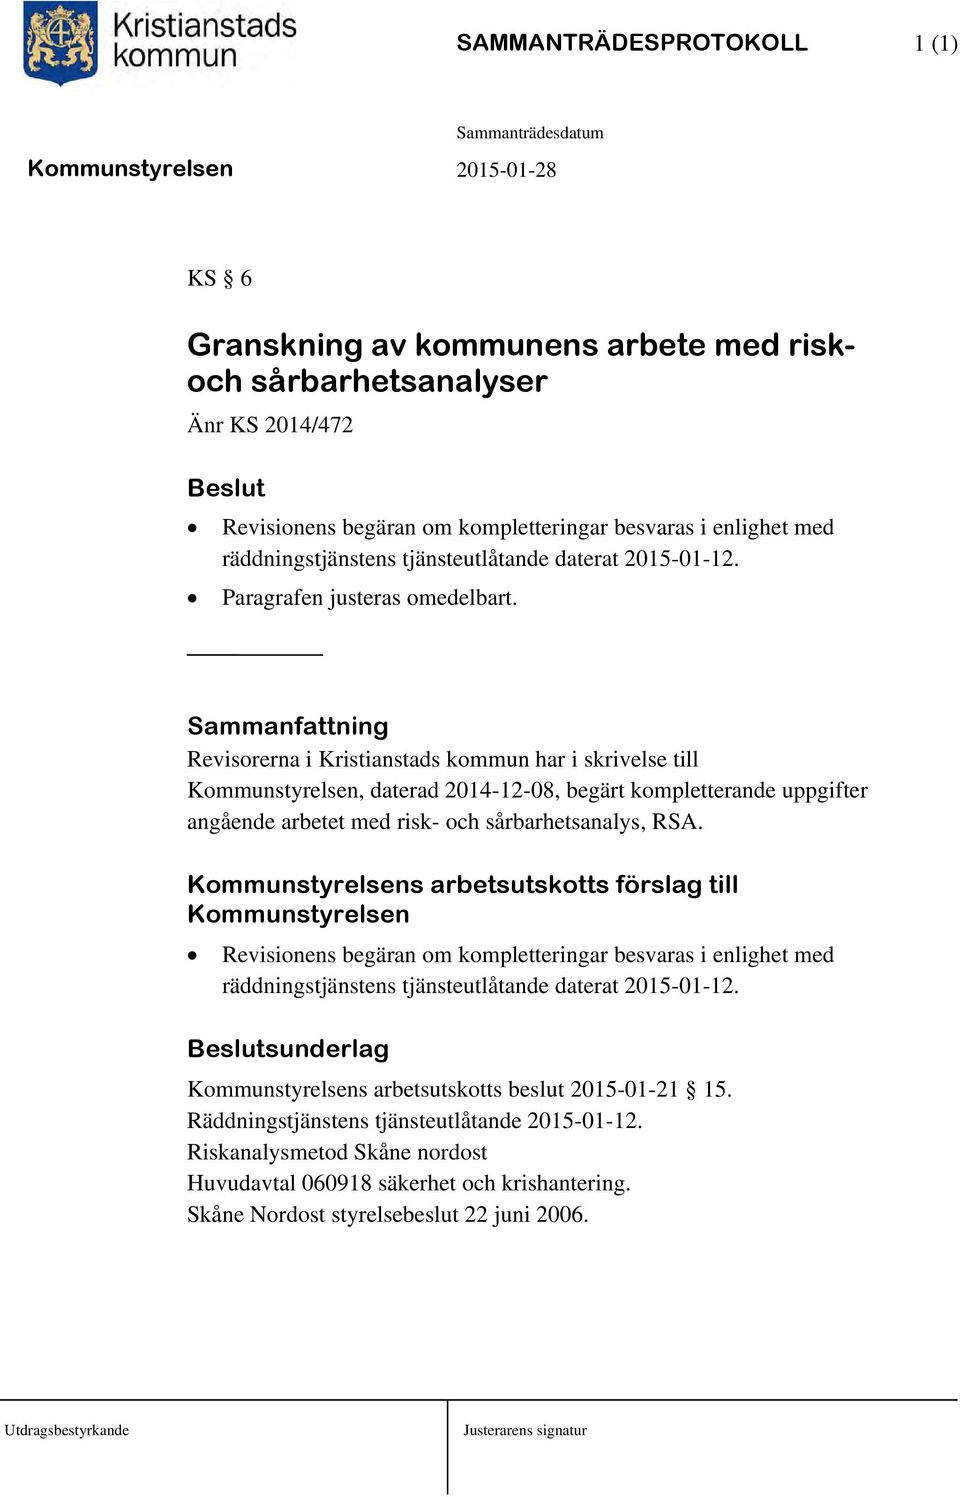 Sammanfattning Revisorerna i Kristianstads kommun har i skrivelse till Kommunstyrelsen, daterad 2014-12-08, begärt kompletterande uppgifter angående arbetet med risk- och sårbarhetsanalys, RSA.